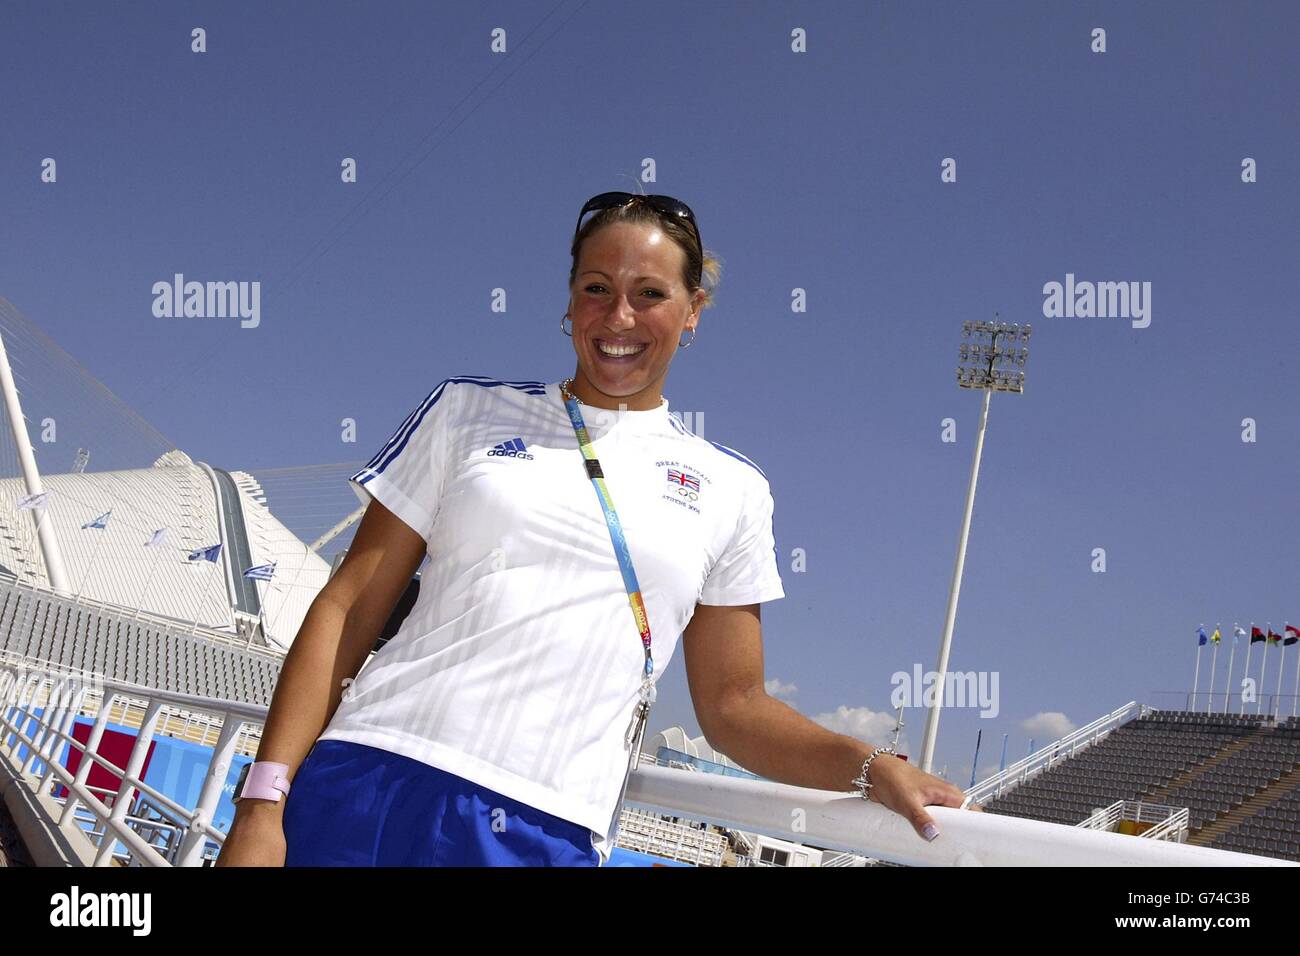 Olimpiadi della Grecia 2004. Nuotatore britannico Sarah Prezzo da Loughborough al Centro Acquatico Olimpico di Atene, Grecia. Foto Stock